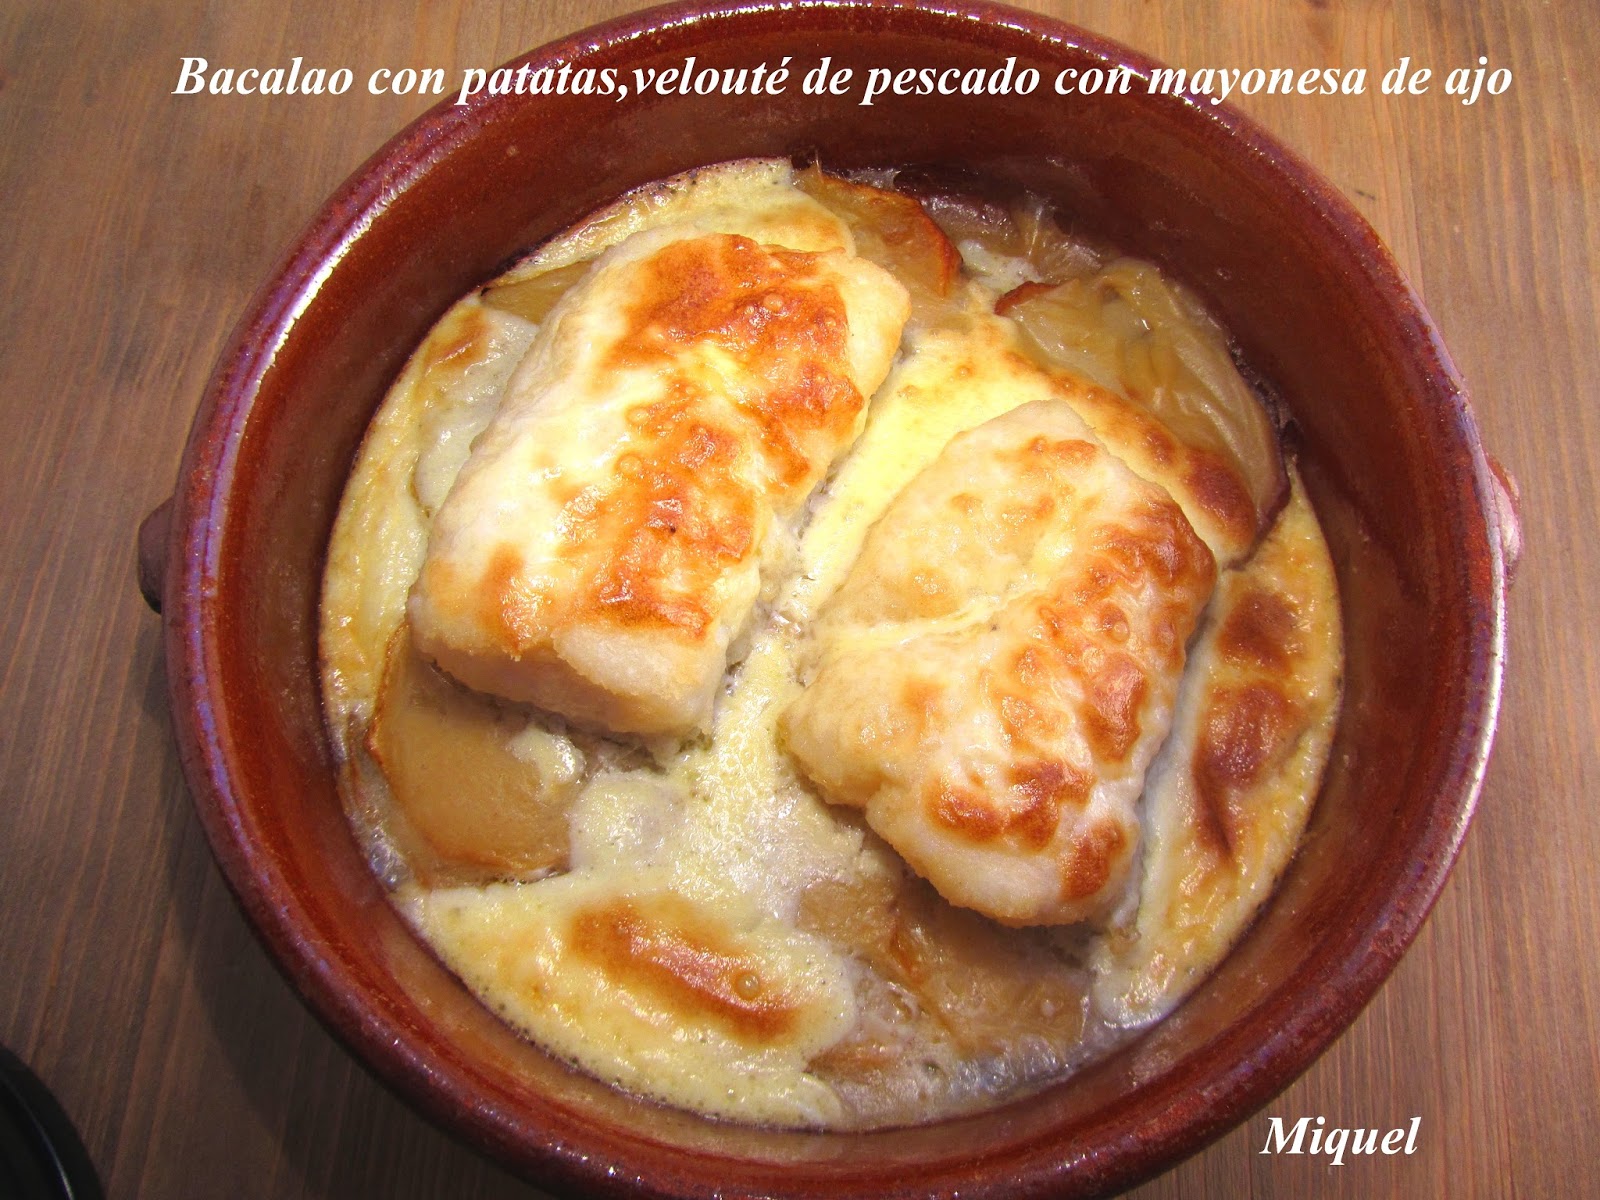 Les receptes del Miquel: Bacalao con patatas y Velouté de pescado con  mayonesa de ajo